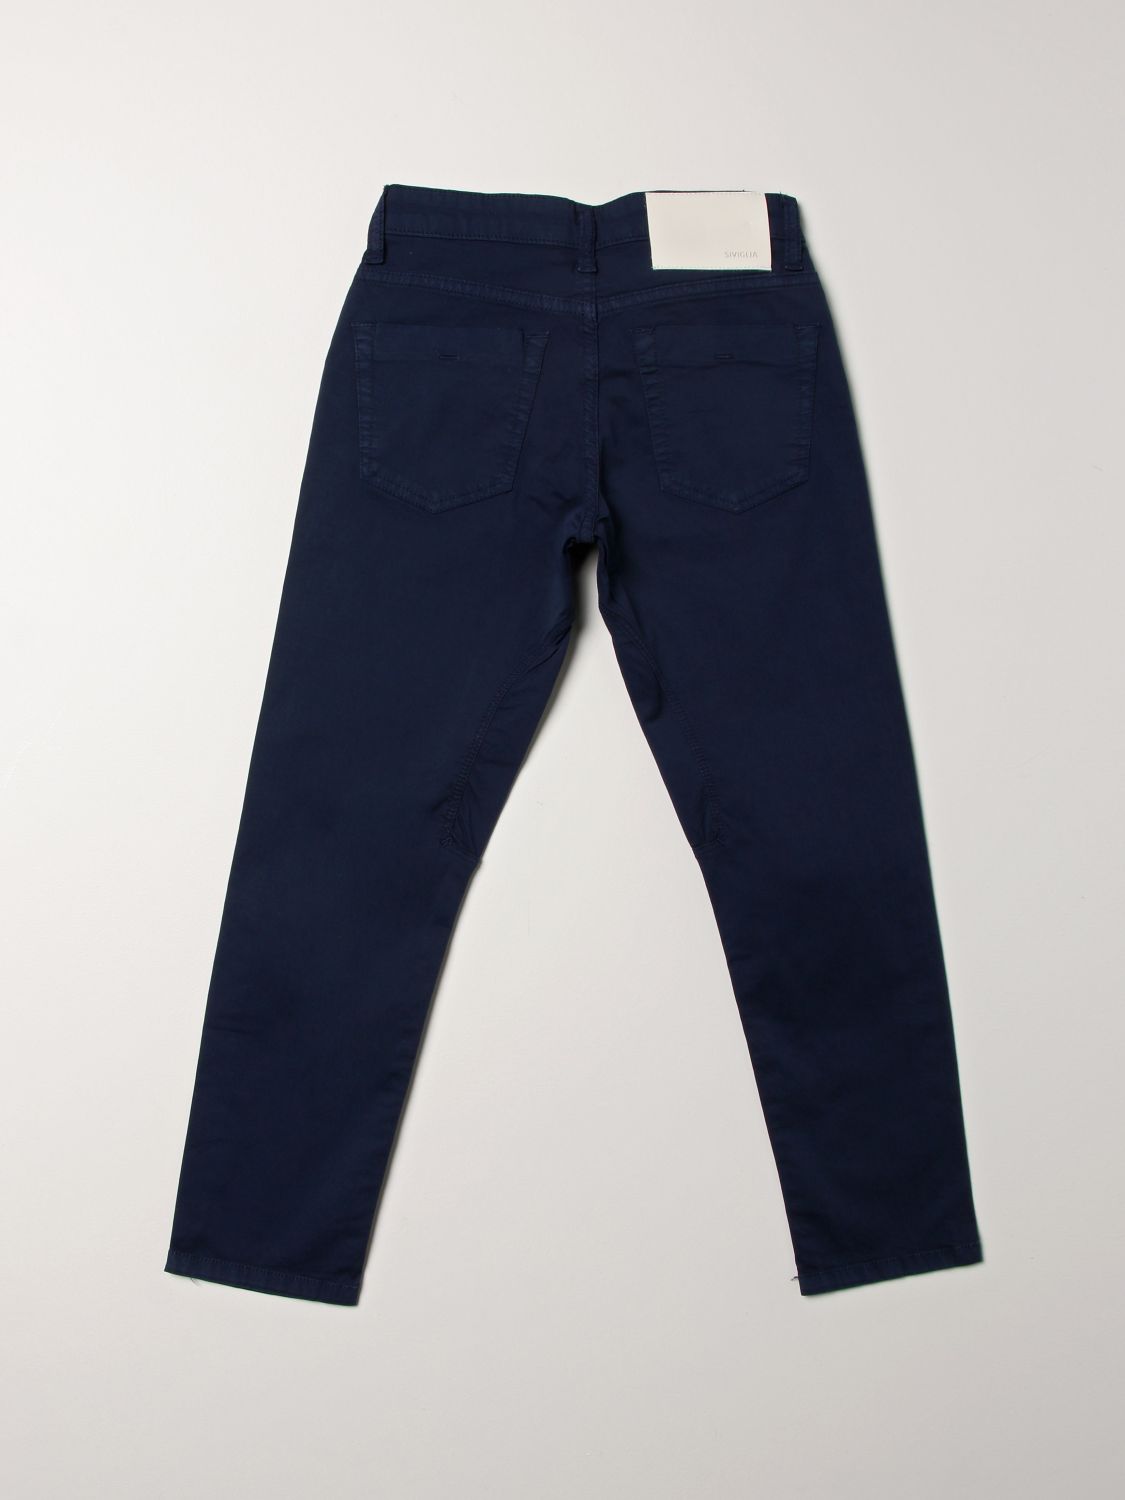 Pantalón Siviglia: Pantalón Siviglia para niño azul marino 2